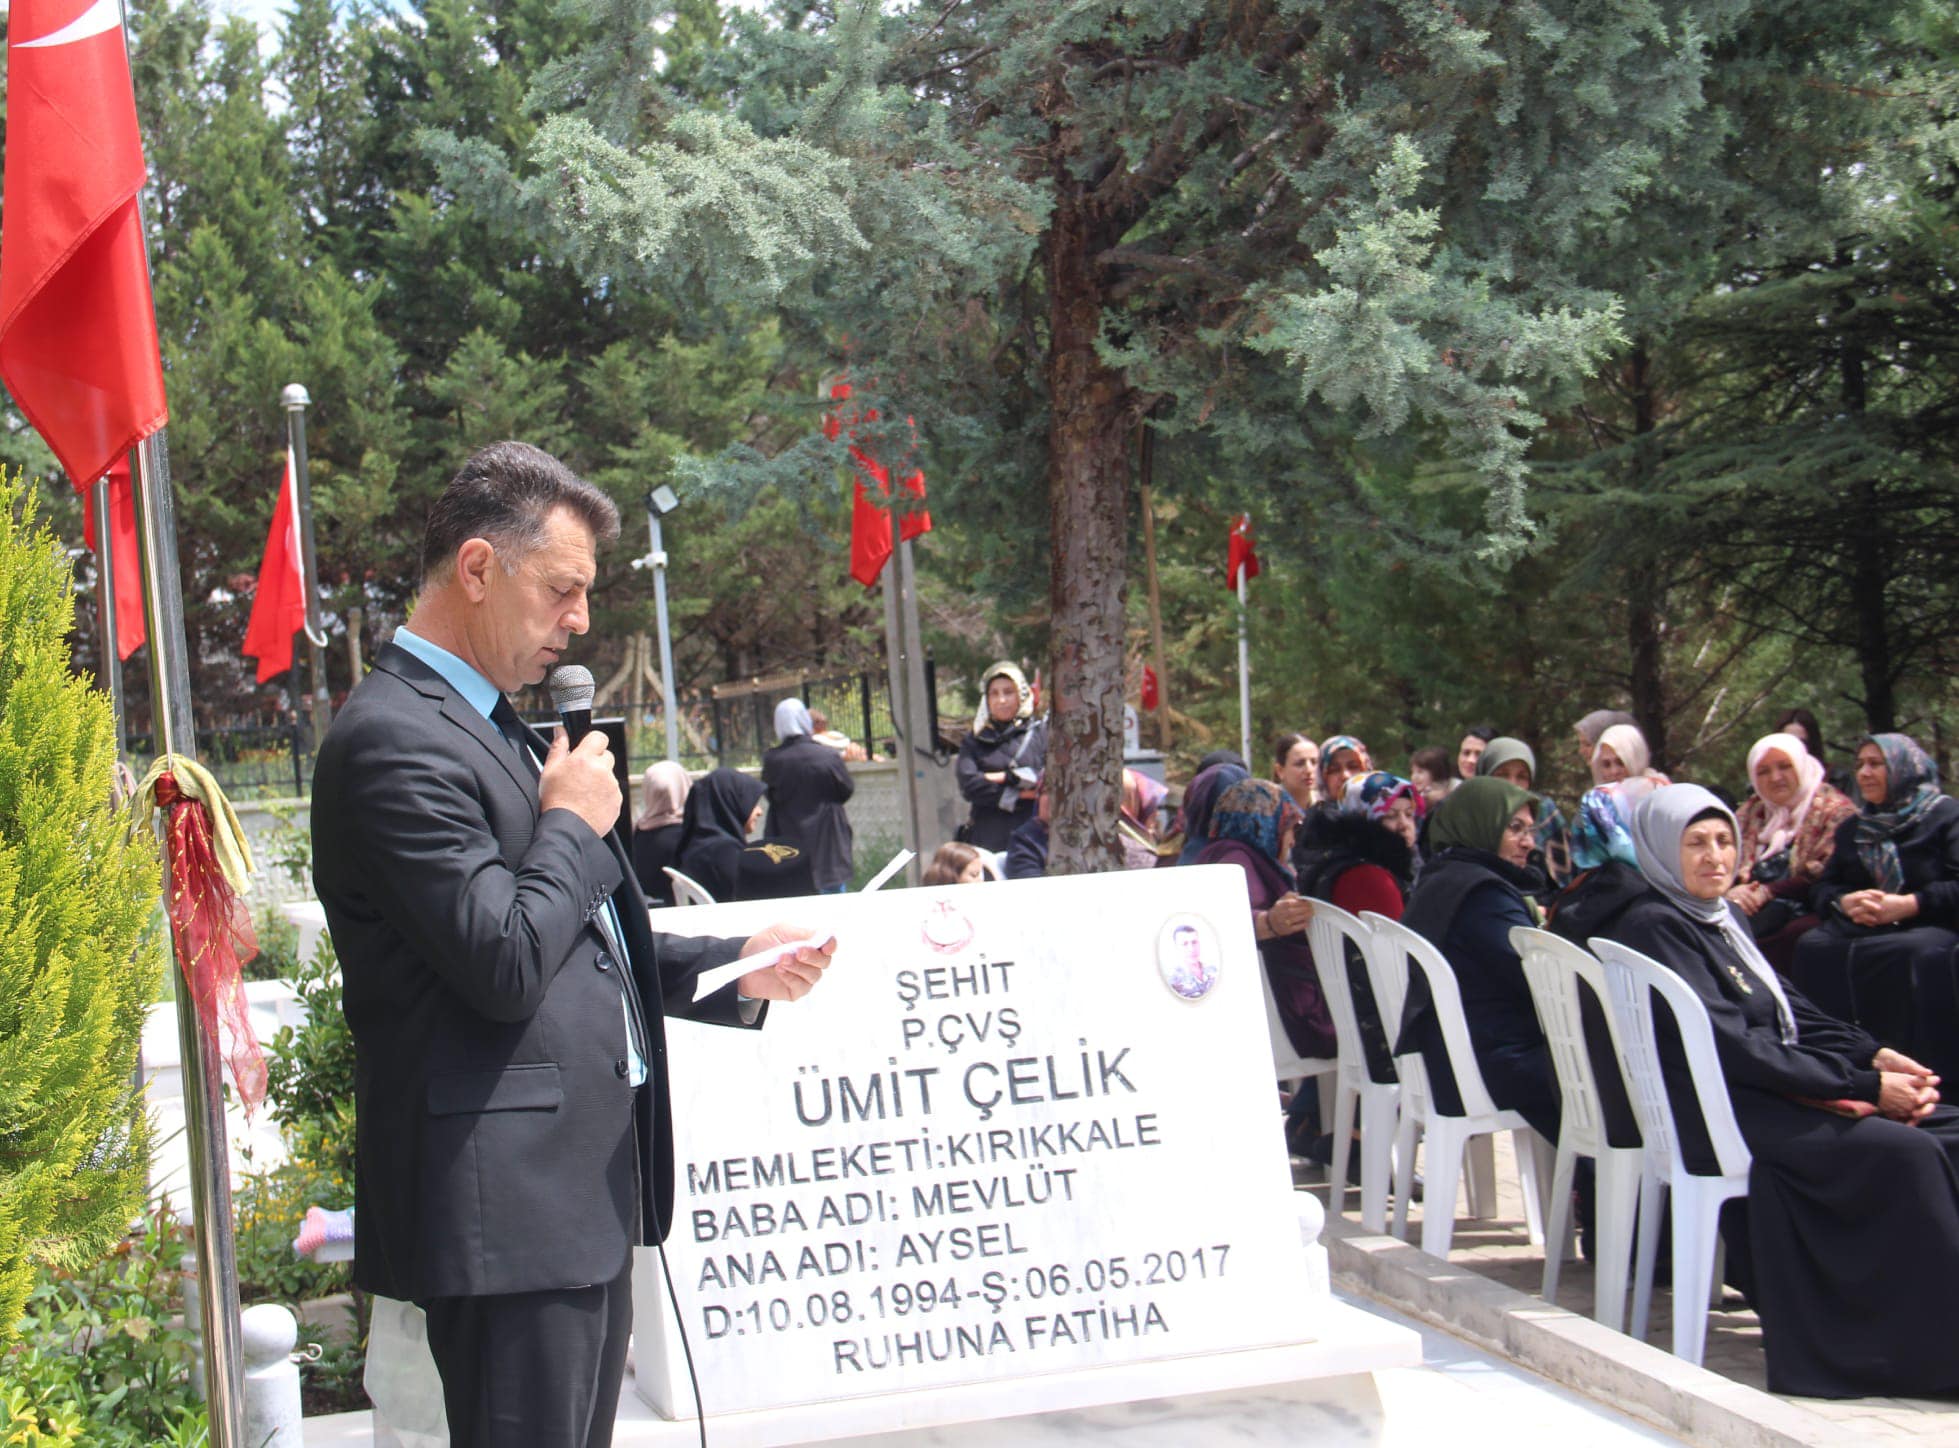 sehit-umit-celik-2 Kırıkkale'li Şehit Piyade Çavuş Ümit Çelik Dualarla Anıldı